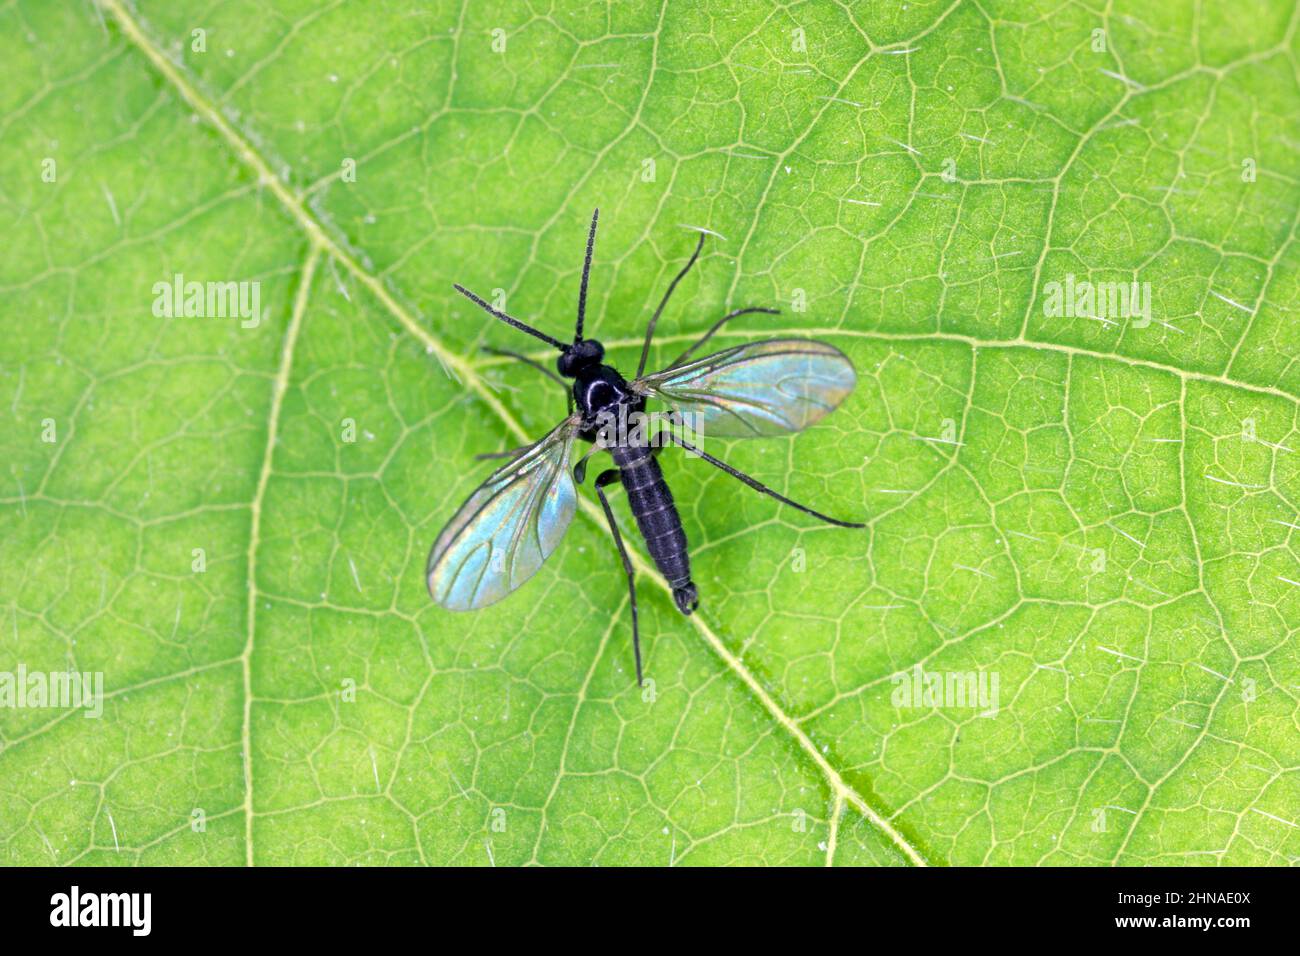 Le champignon à ailes foncées gnat, Sciaridae sur une feuille verte, ces insectes se trouvent souvent à l'intérieur des maisons Banque D'Images